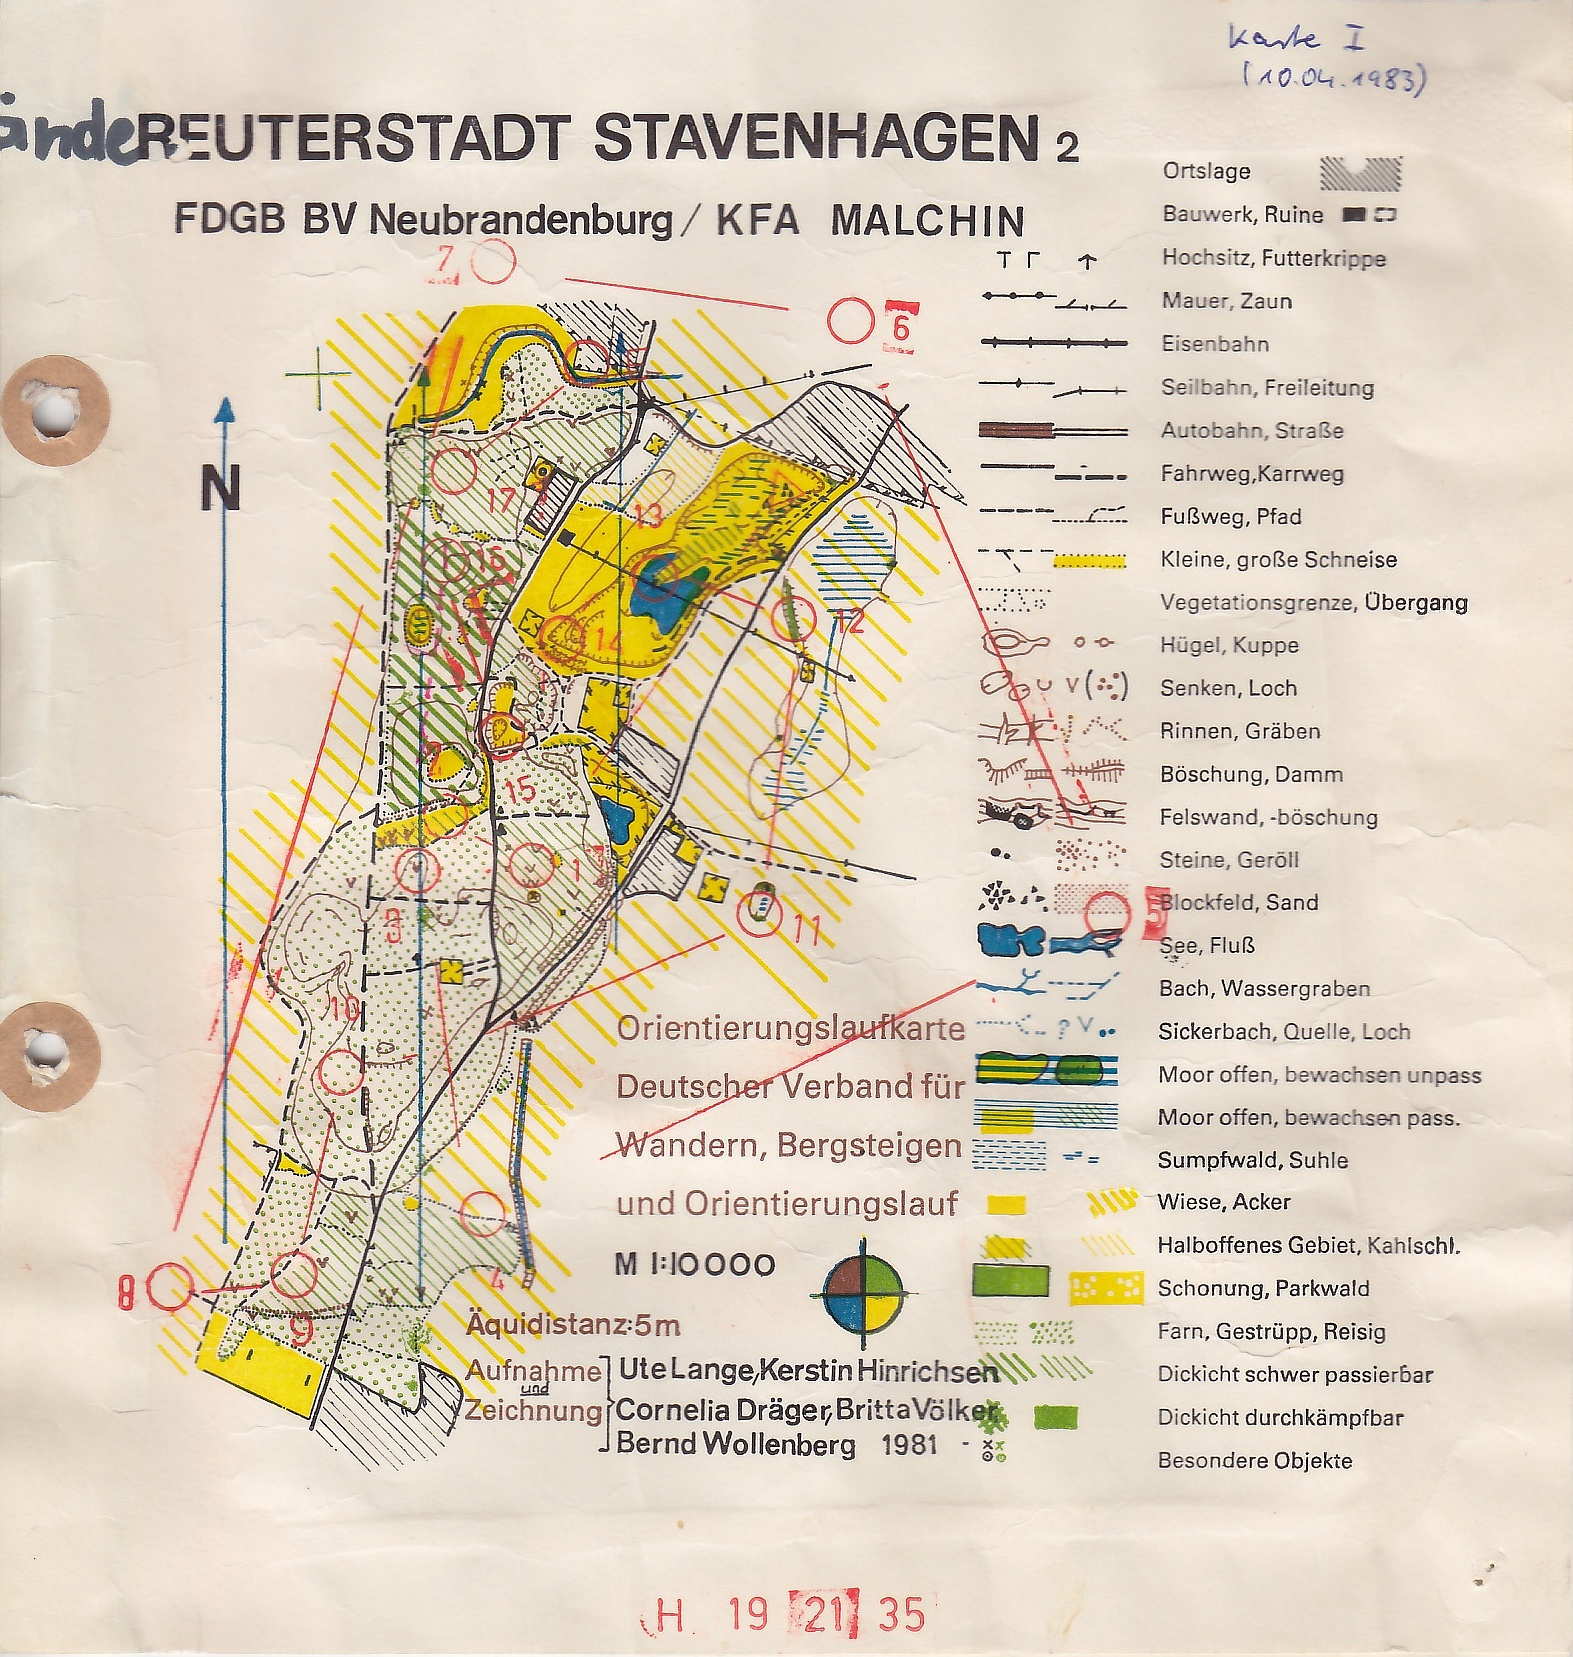 Stavenhagen (10.04.1983)